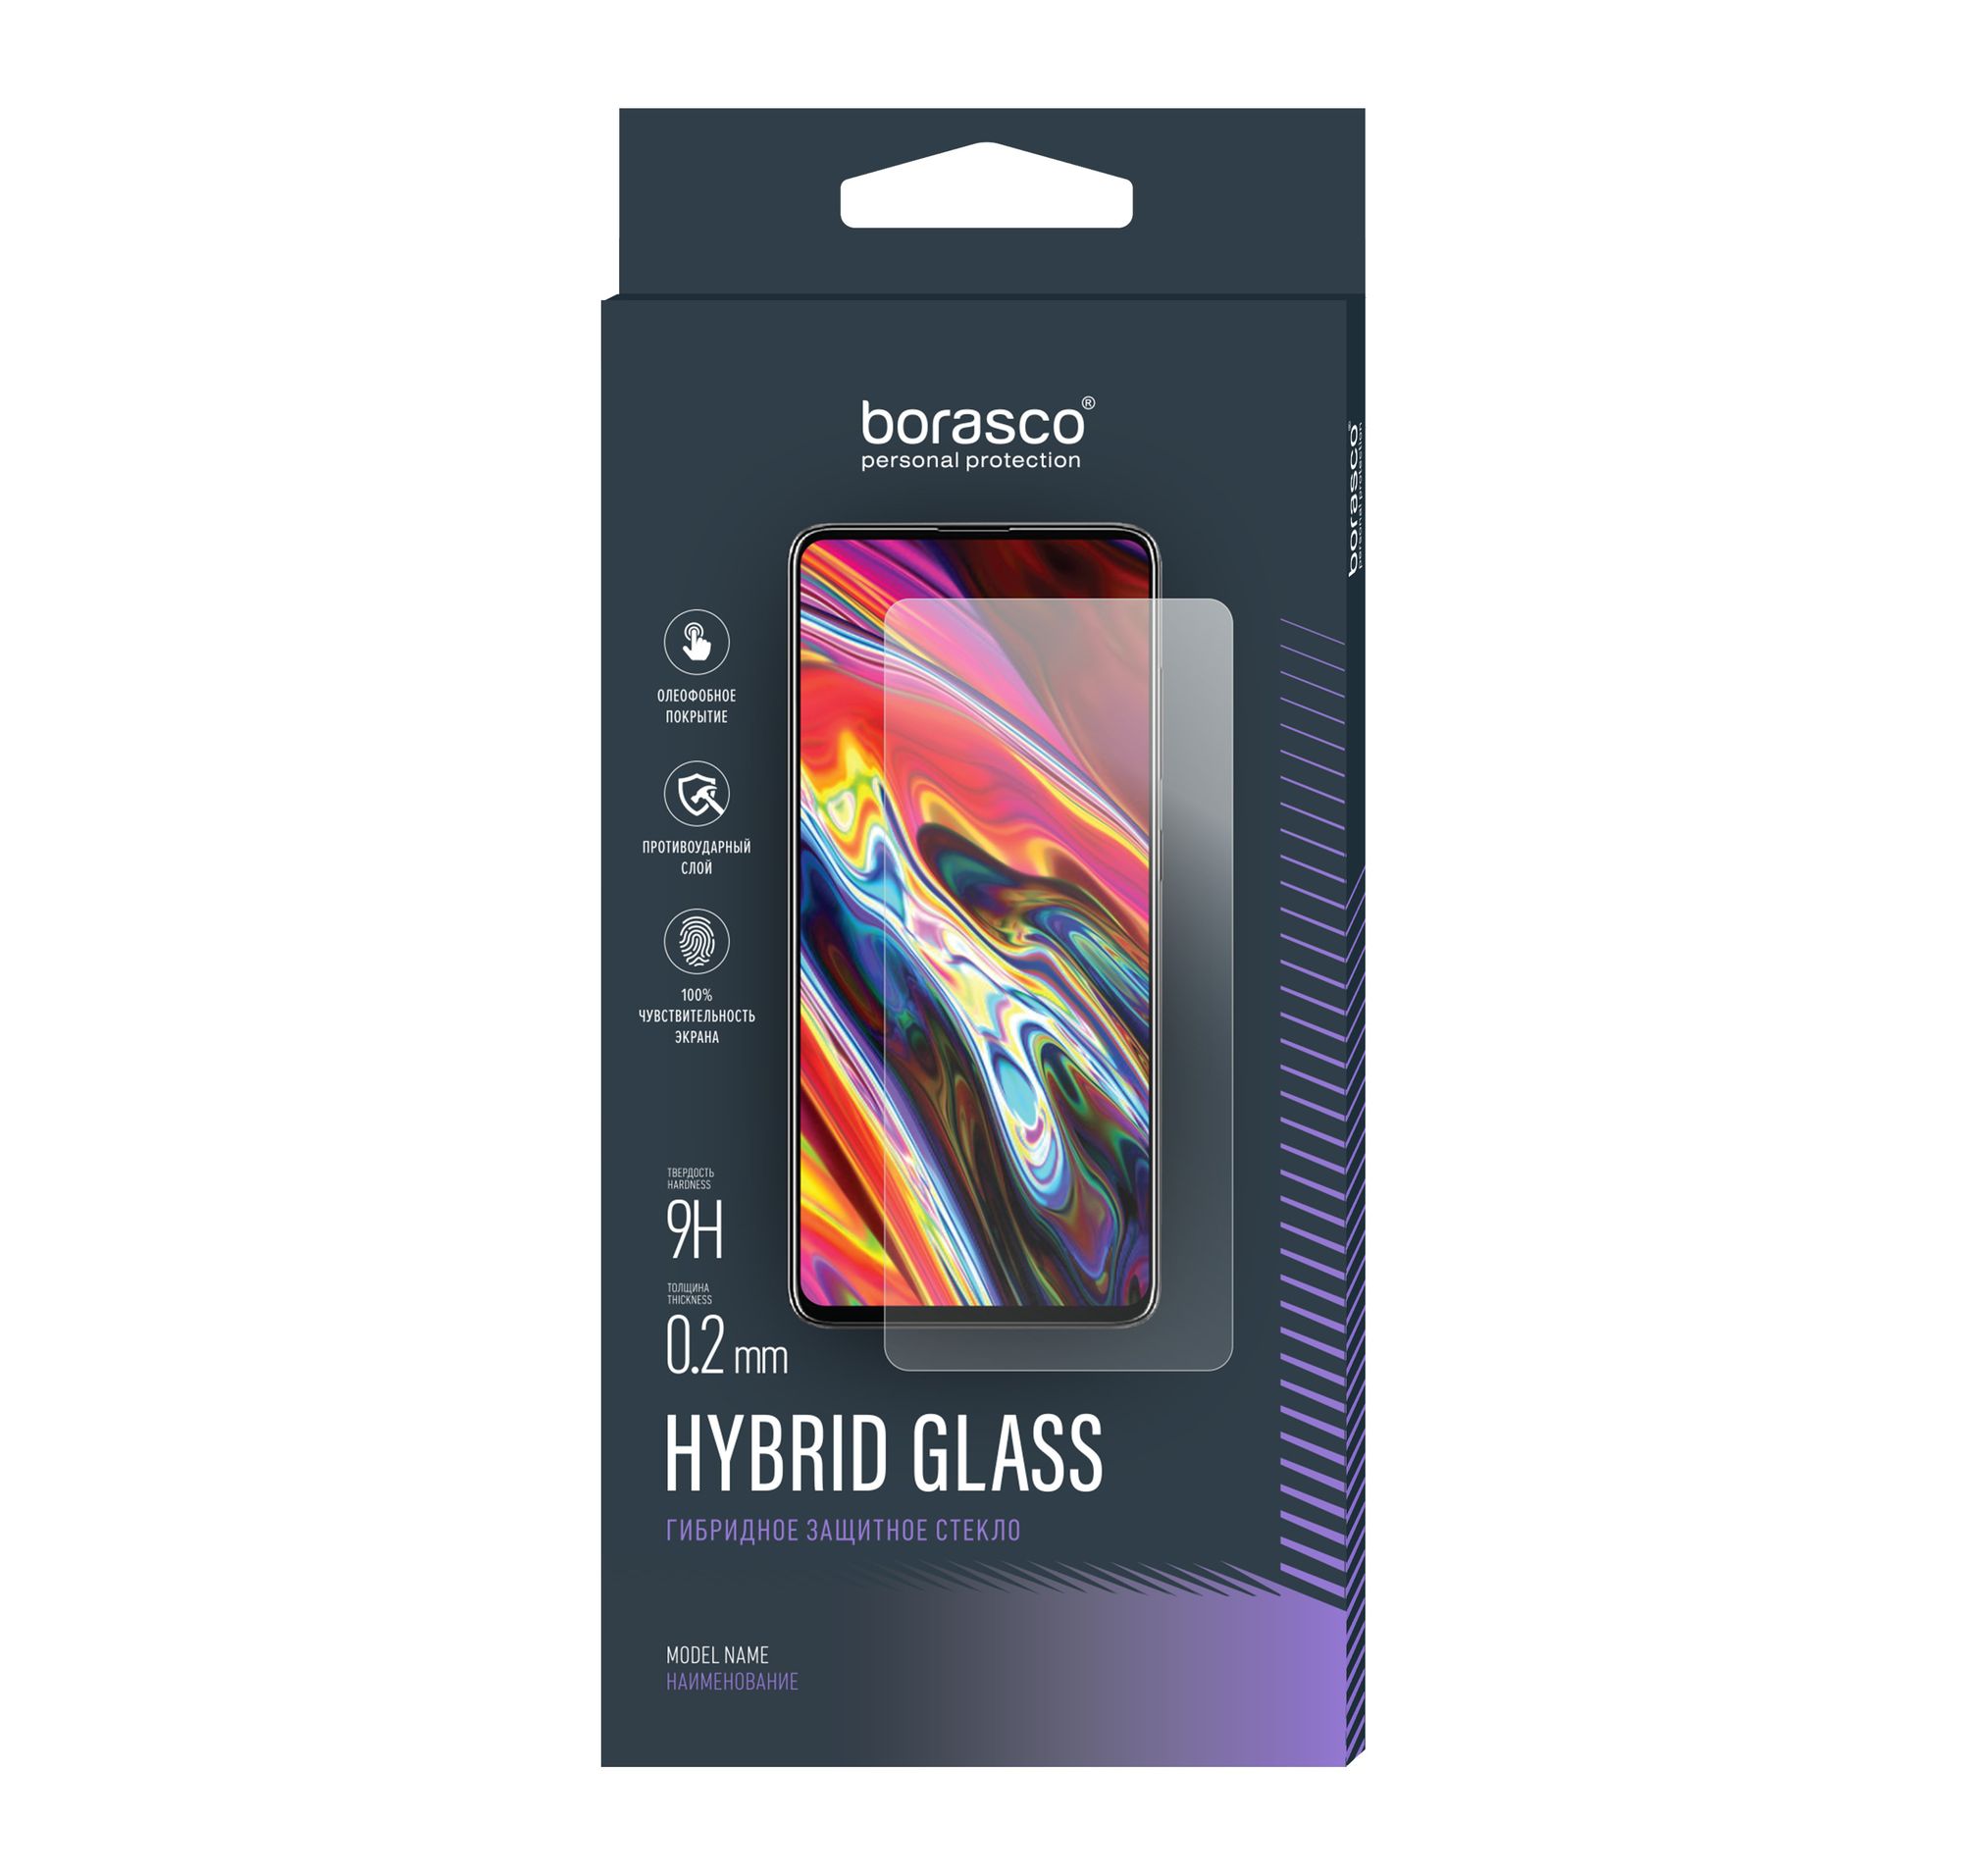 Стекло защитное Hybrid Glass VSP 0,26 мм для Motorola Moto g7 Play защитное стекло 3d для motorola moto g7 play черный